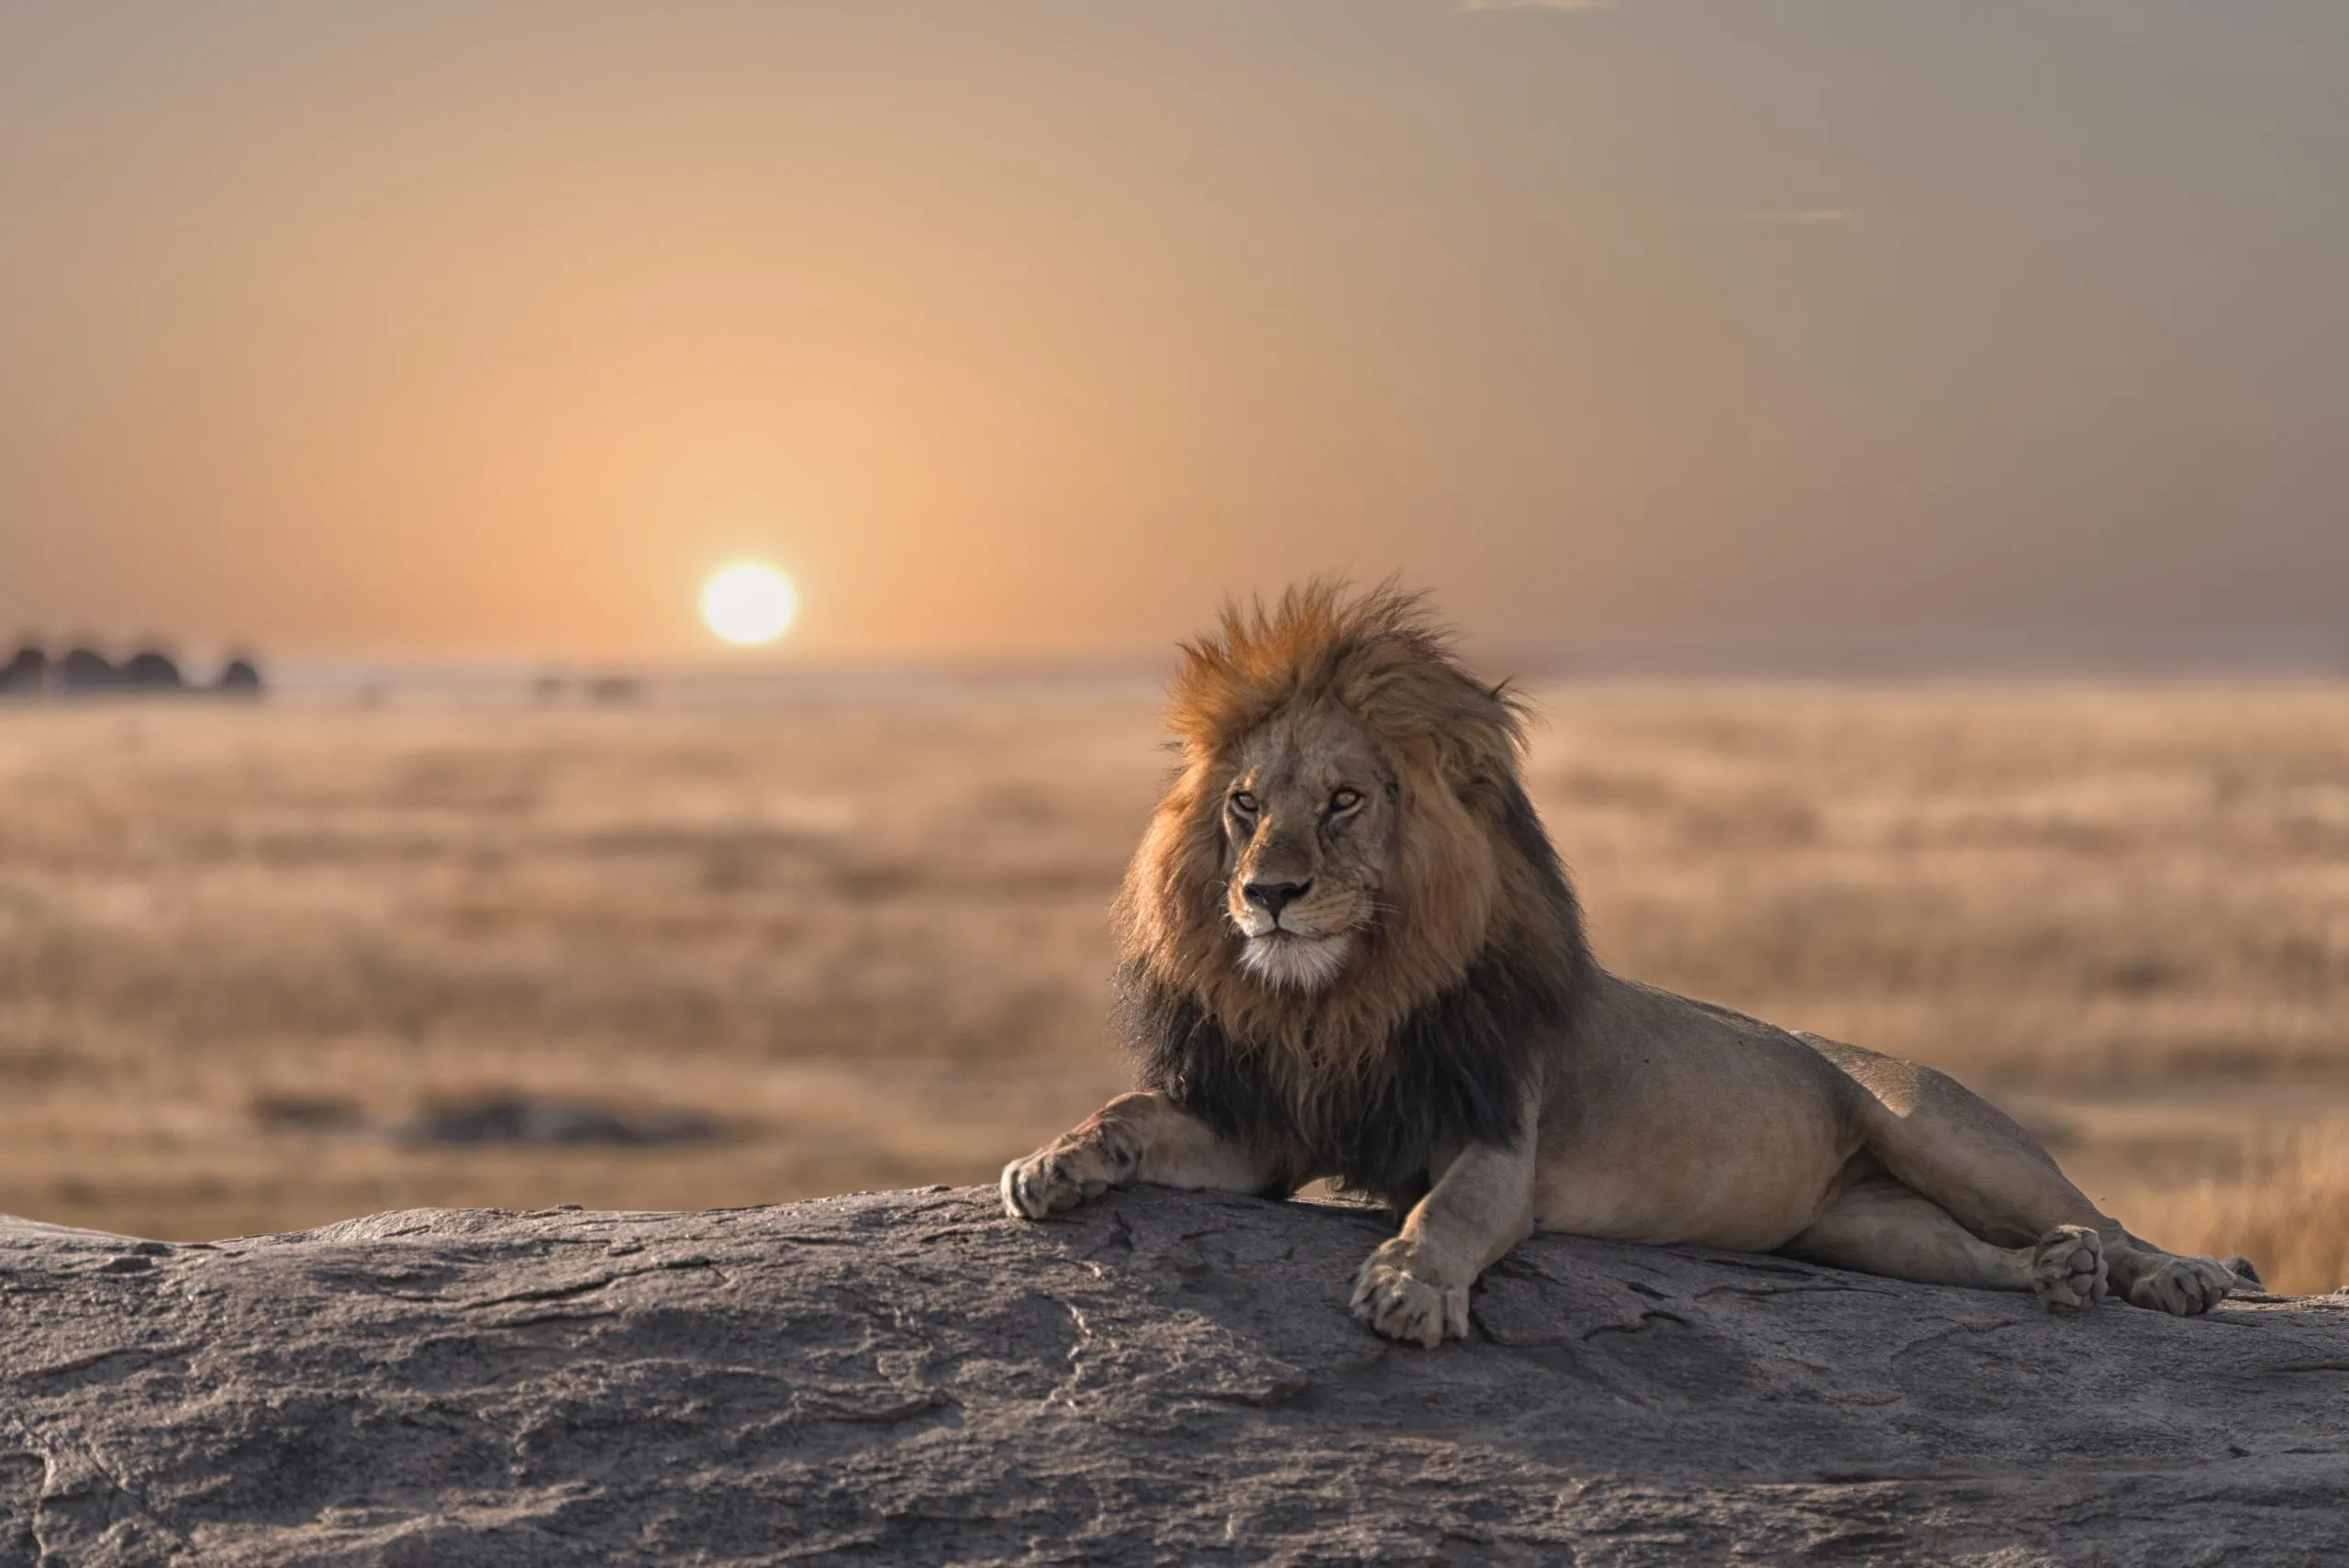 En lejonhanne sitter på toppen av klippan och letar efter sitt område. Han ser så vacker ut.